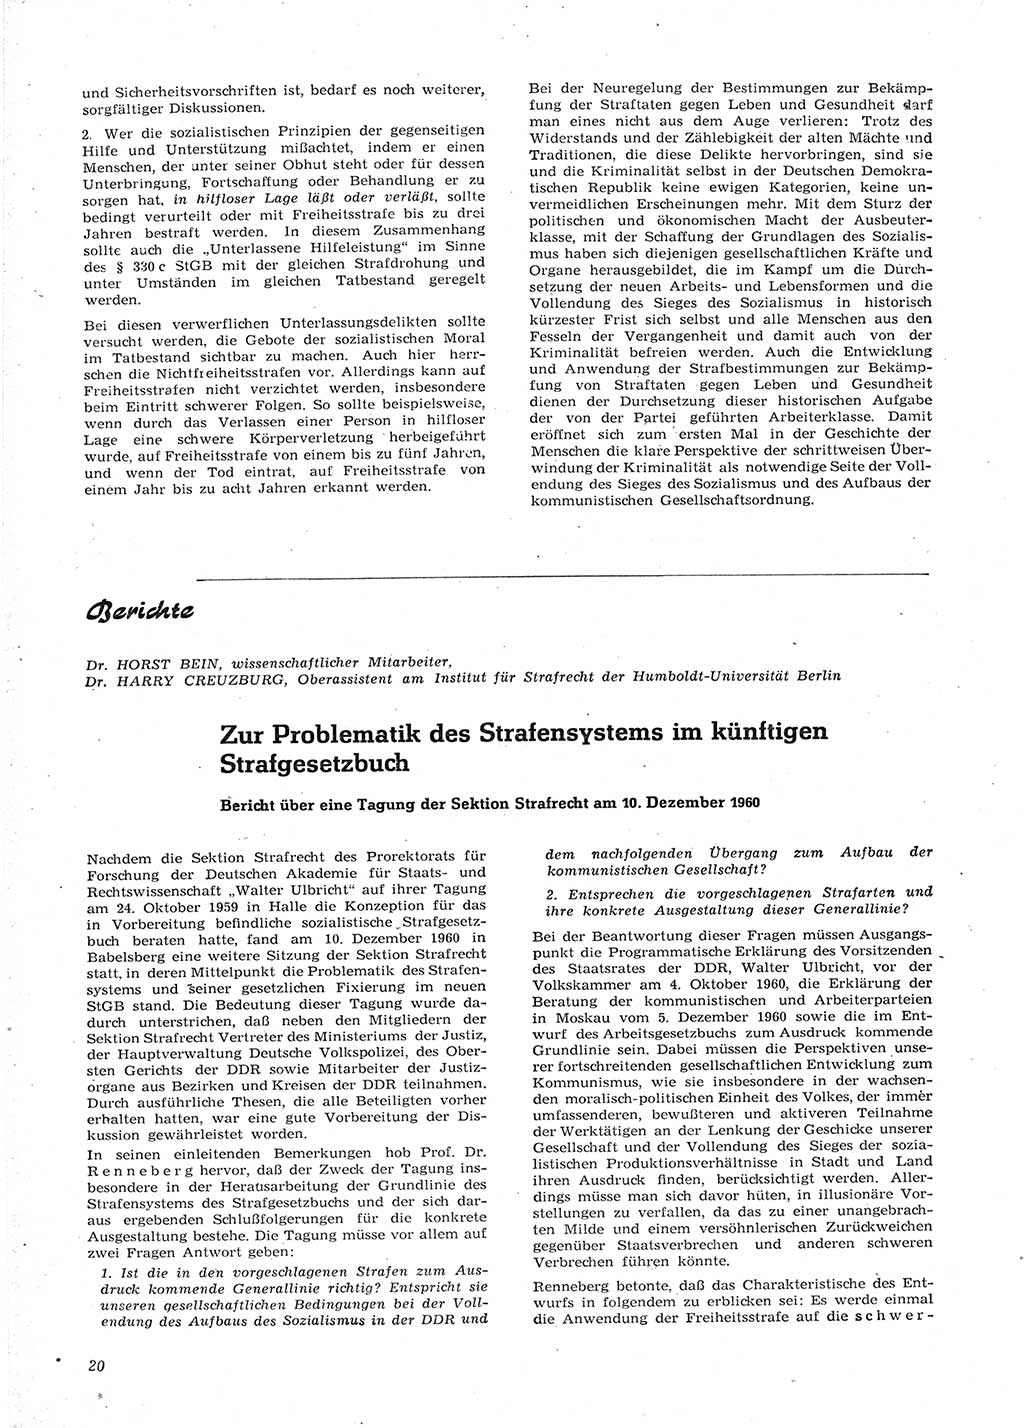 Neue Justiz (NJ), Zeitschrift für Recht und Rechtswissenschaft [Deutsche Demokratische Republik (DDR)], 15. Jahrgang 1961, Seite 20 (NJ DDR 1961, S. 20)